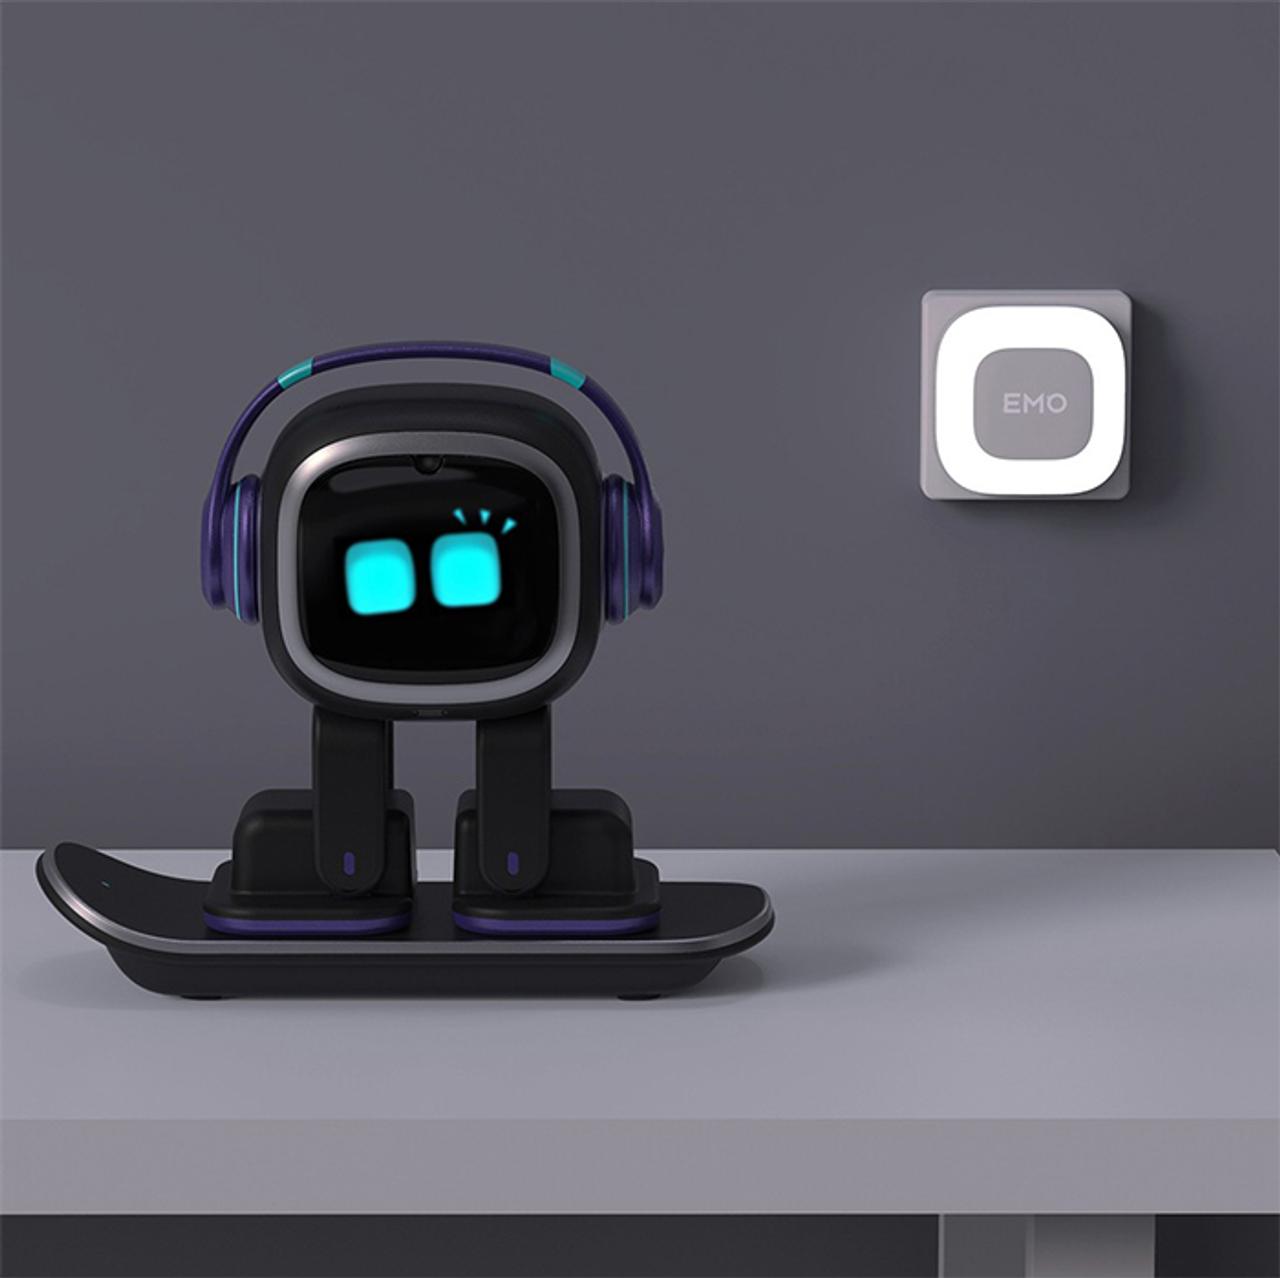 デスクトップのお供に、一緒に遊べるロボットのペット｢EMO｣